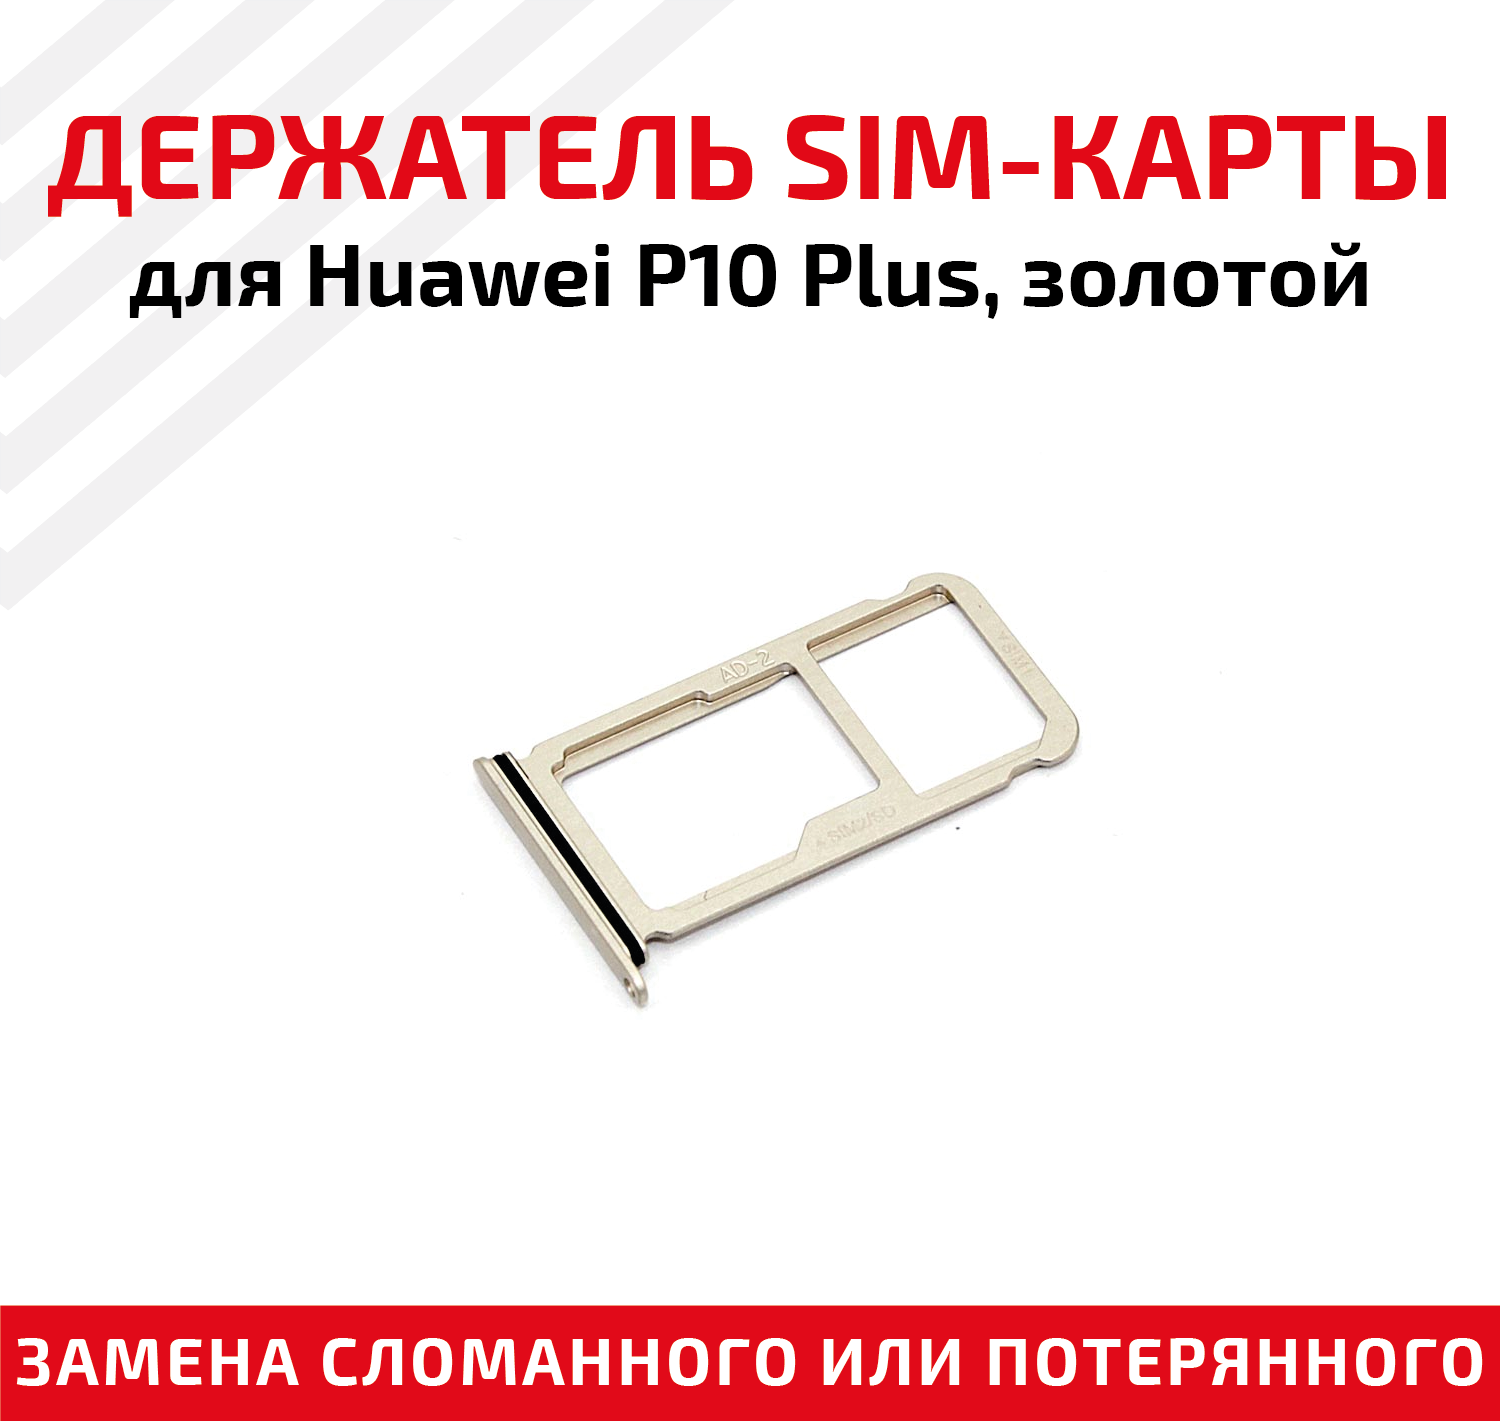 Лоток (держатель, контейнер, слот) SIM-карты для мобильного телефона (смартфона) Huawei P10 Plus, золотой